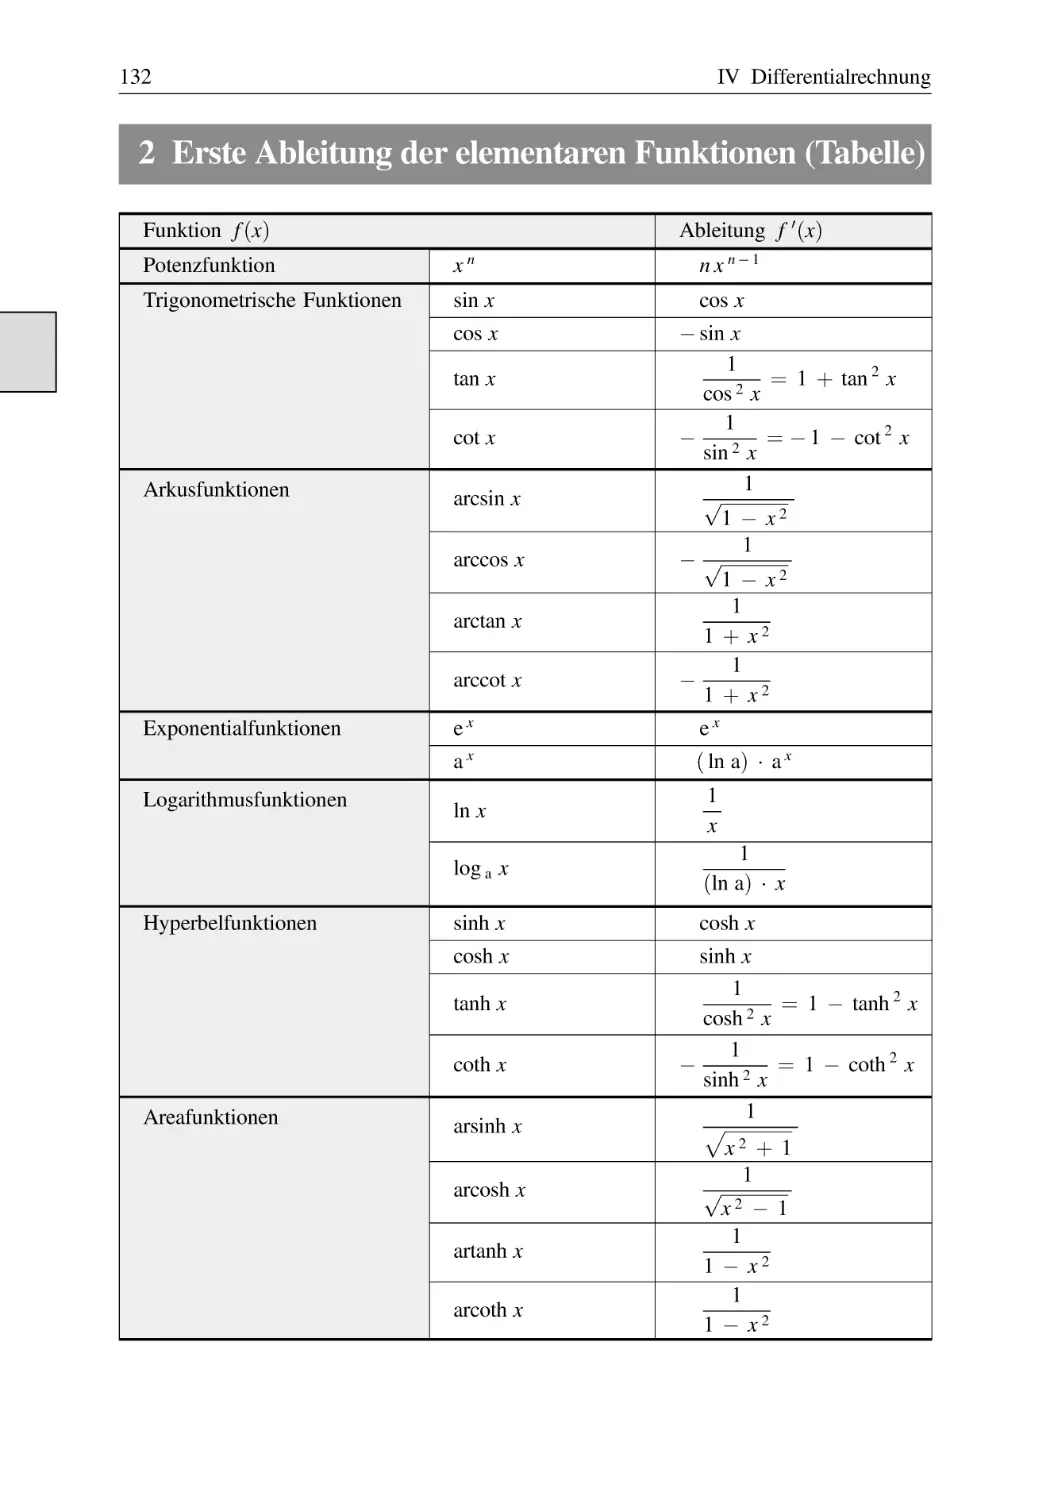 2 Erste Ableitung der elementaren Funktionen (Tabelle)